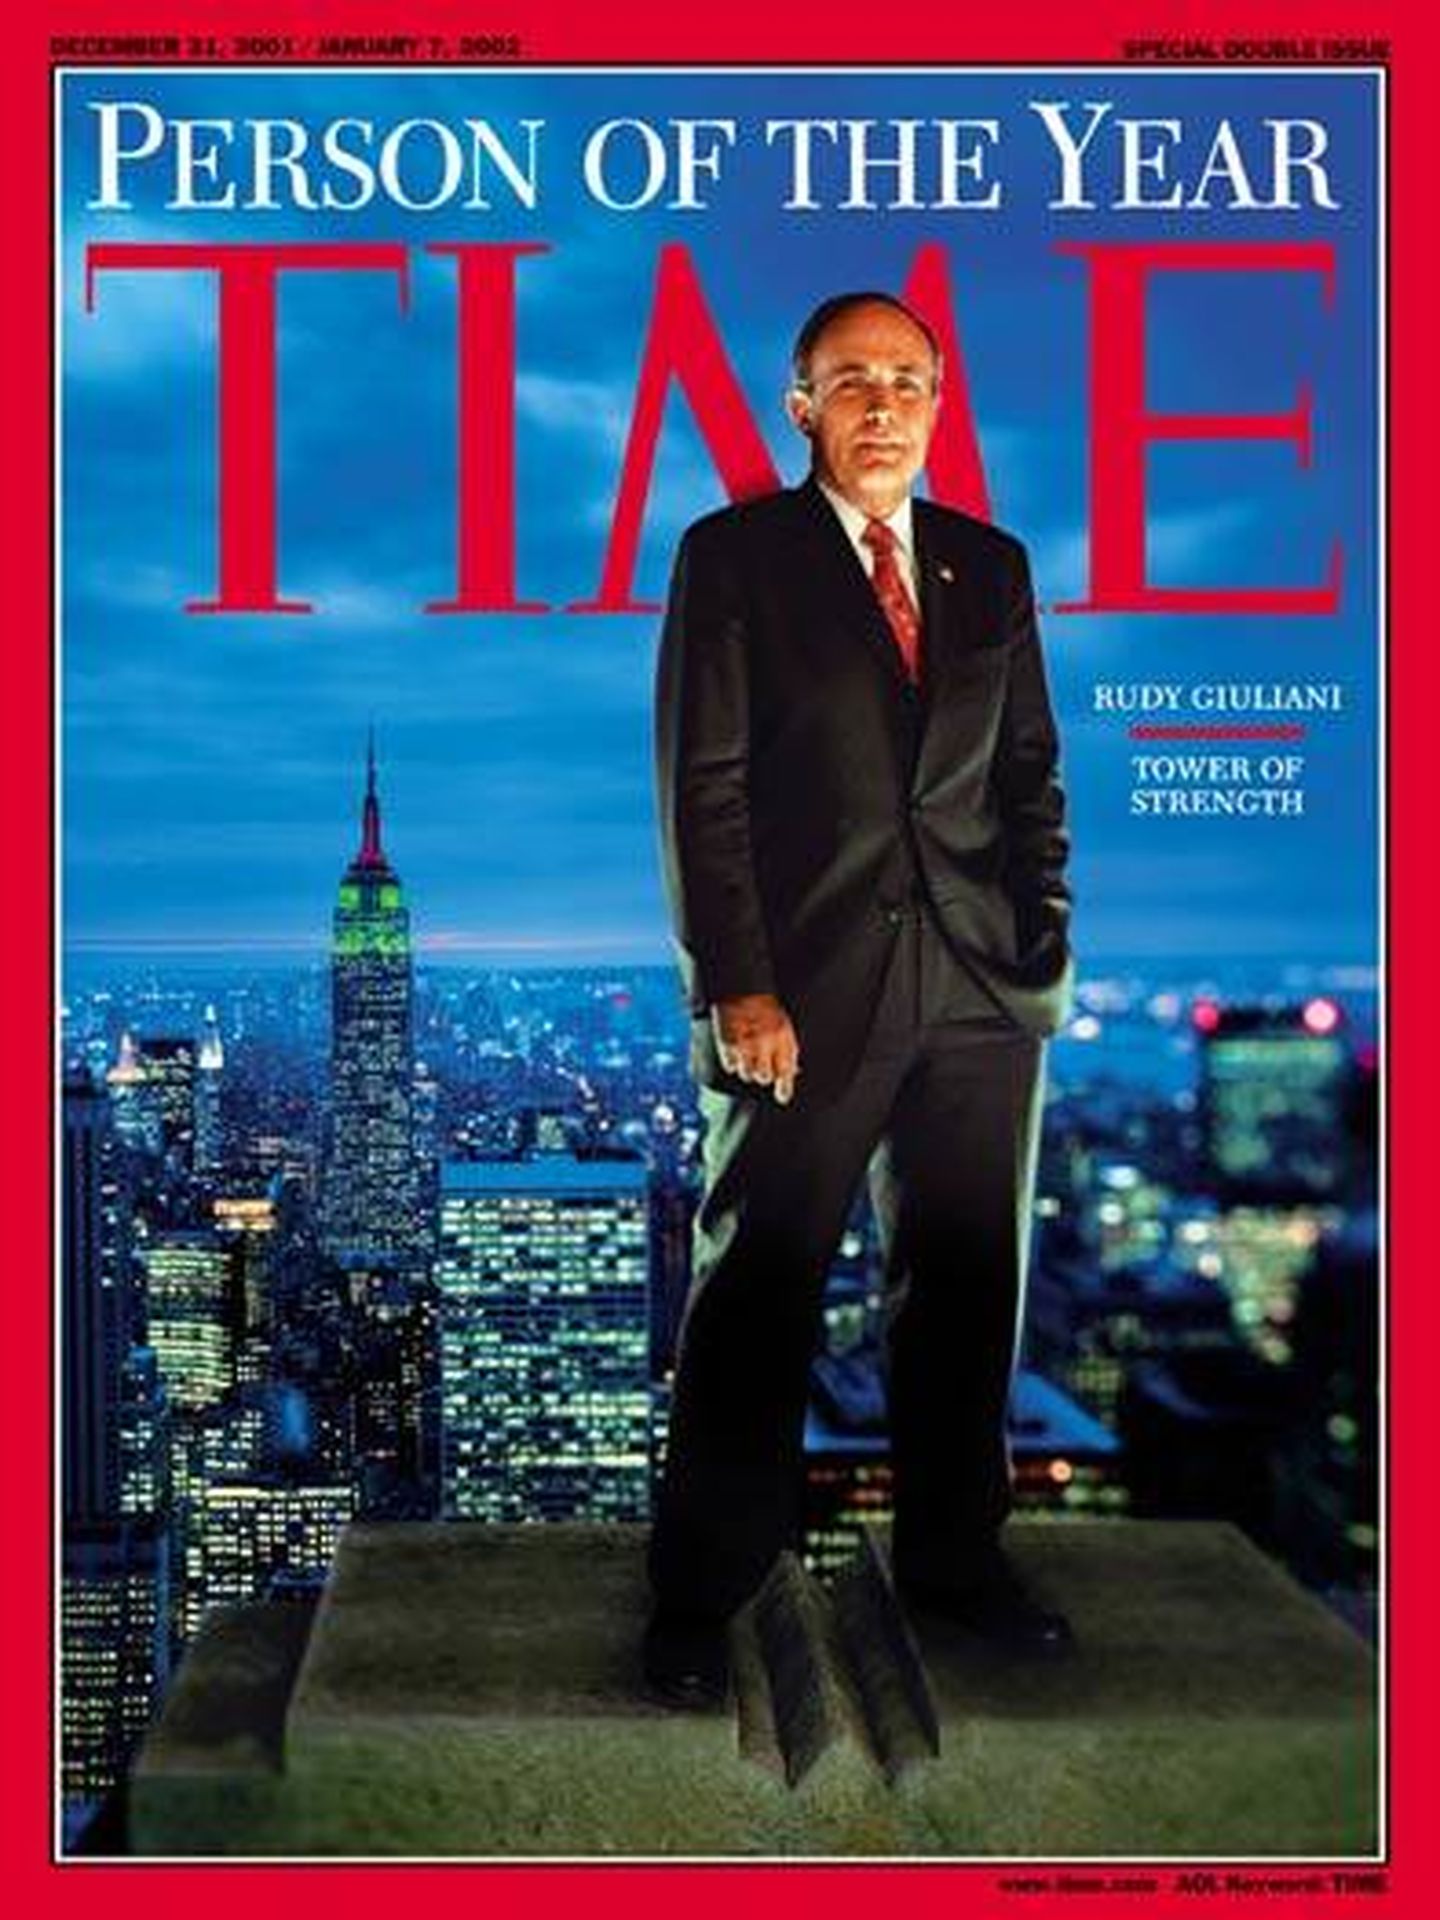 Ejemplar de la revista Time con Giuliani como 'persona del año'